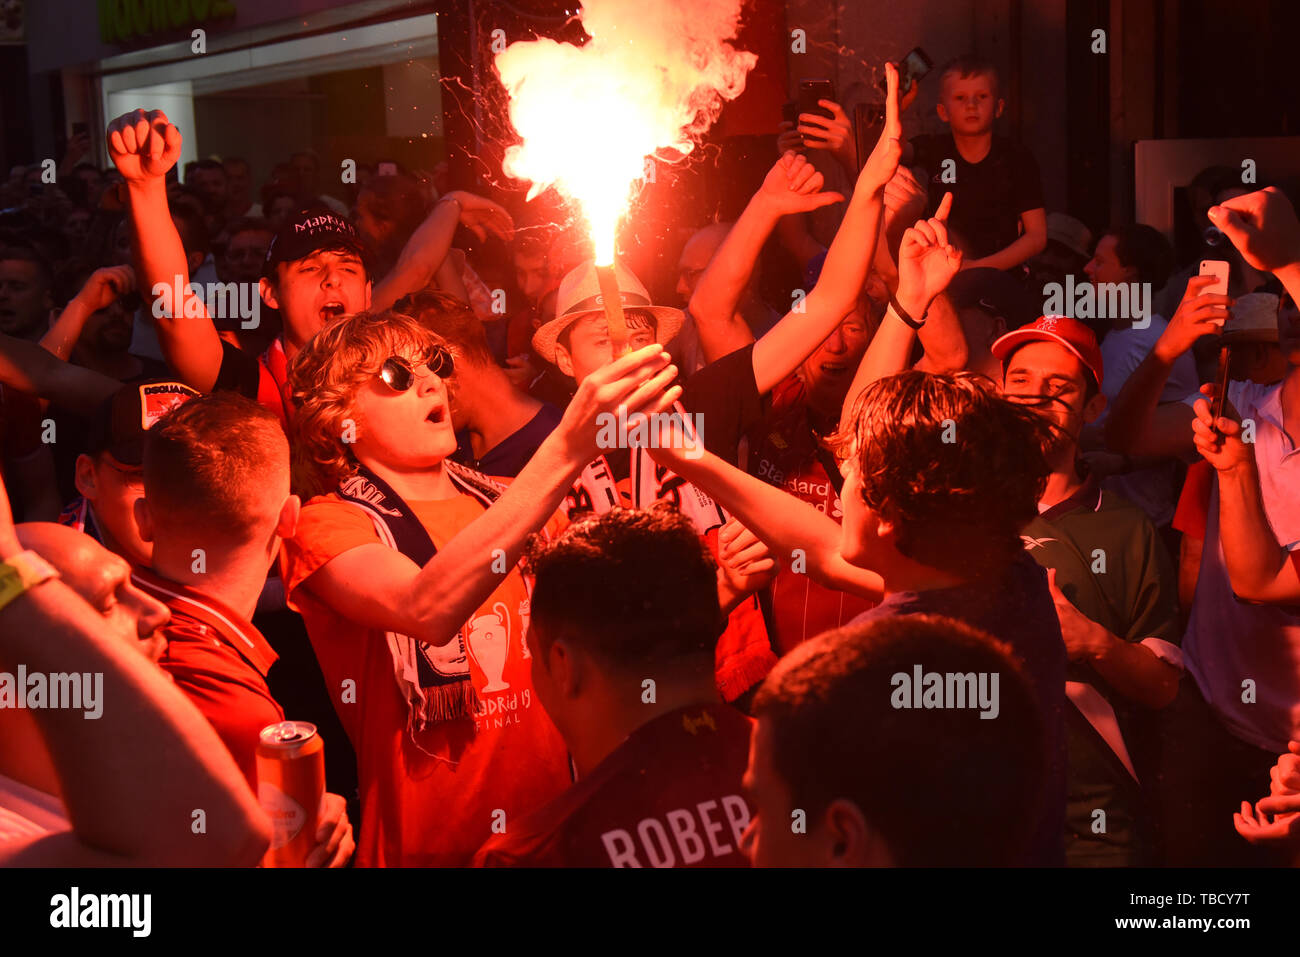 Liverpool, crier des slogans avec un burning torches dans Madrid. Autour de 5000 fans de Liverpool dans le centre de Madrid avant la finale de la Ligue des Champions entre Liverpool F.C. (UK) et Tottenham Hotspur F.C. (UK), qui auront lieu le samedi, 1 juin 2019 au stade de Wanda Metropolitano de Madrid. Banque D'Images